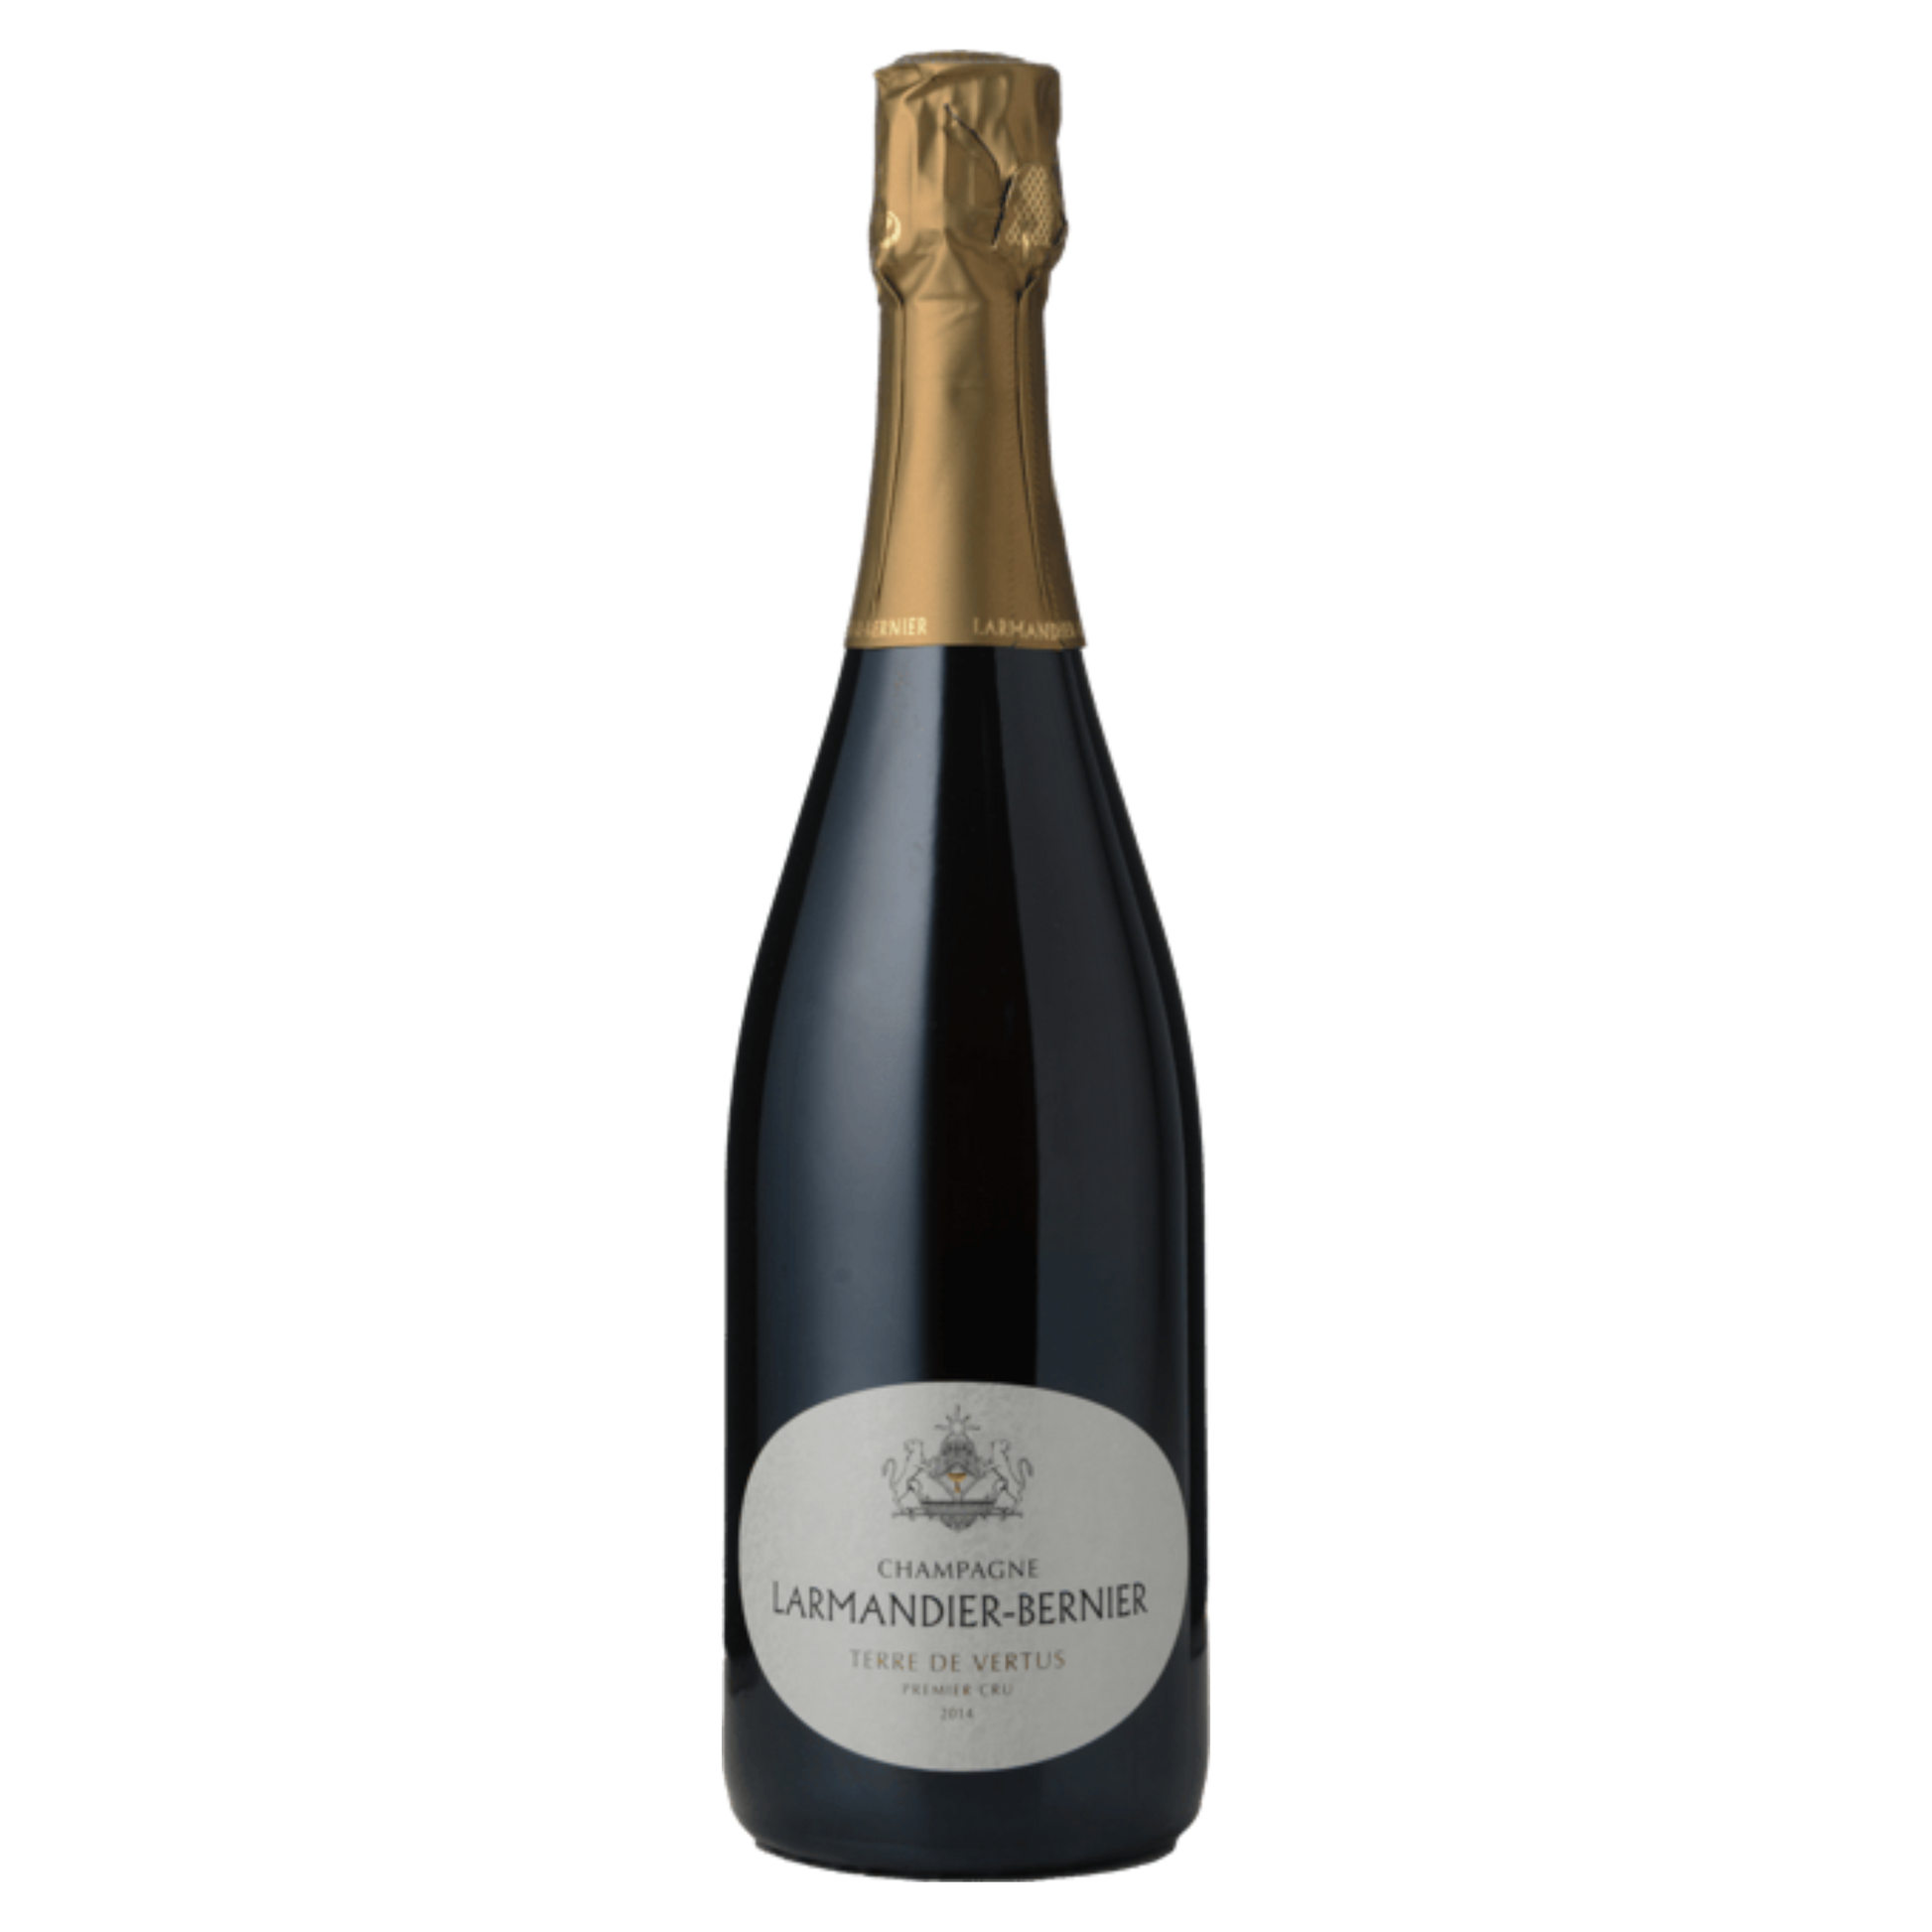 Champagne Larmandier-Bernier 1er Cru Terre de Vertus Blanc de Blancs 2014